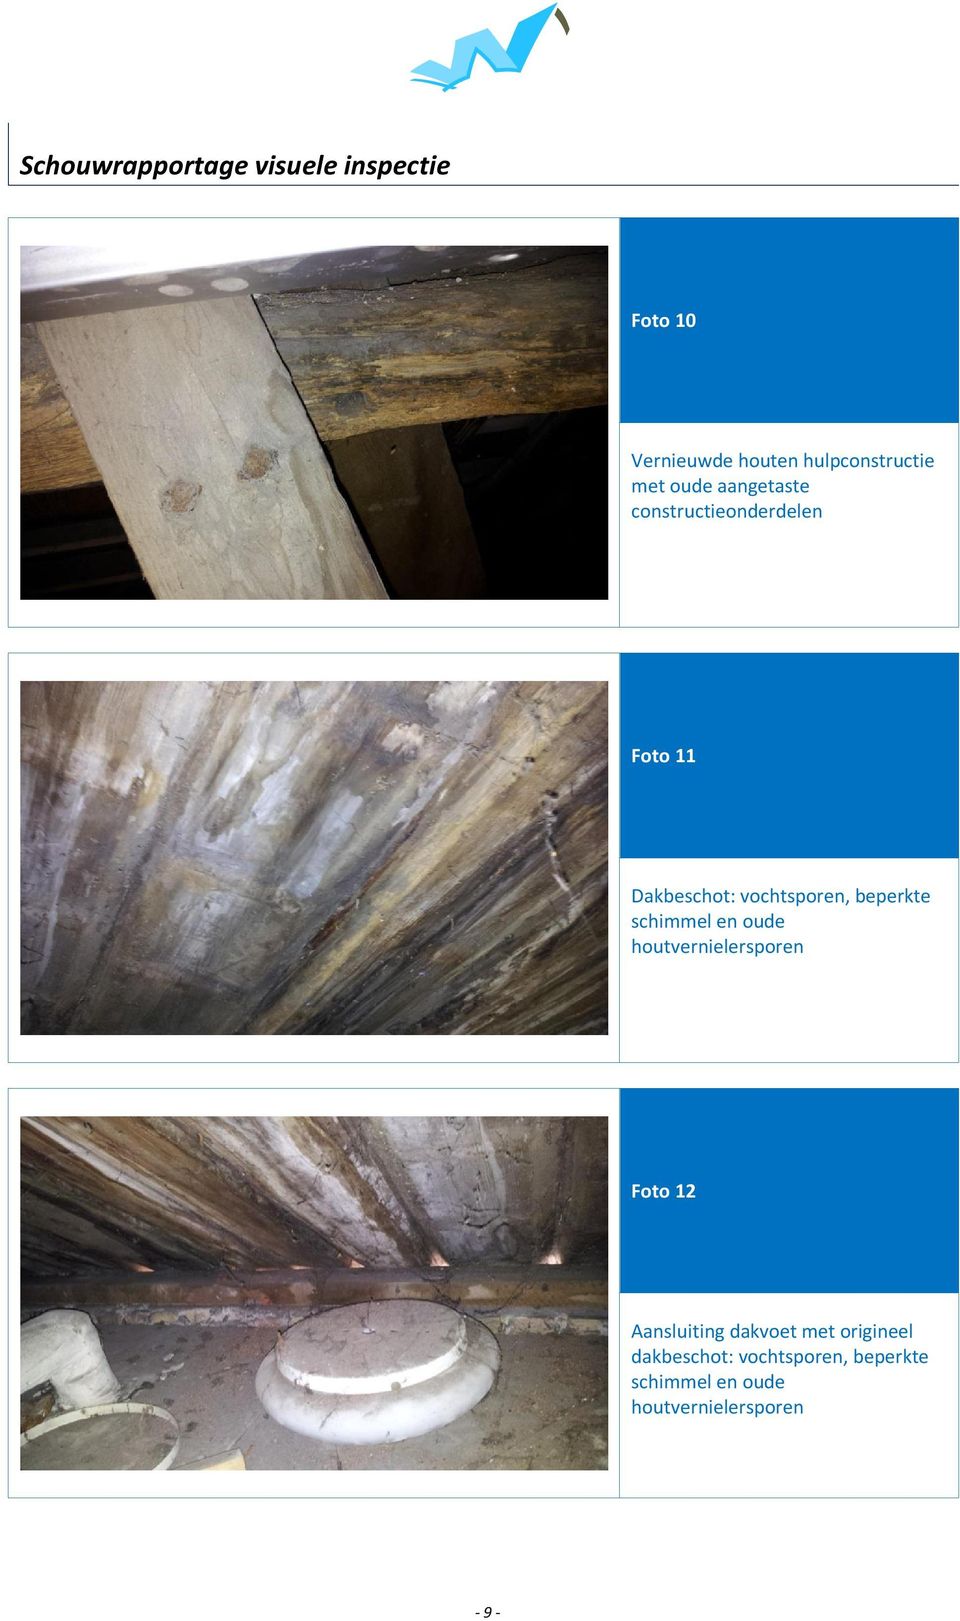 beperkte schimmel en oude houtvernielersporen Foto 12 Aansluiting dakvoet met